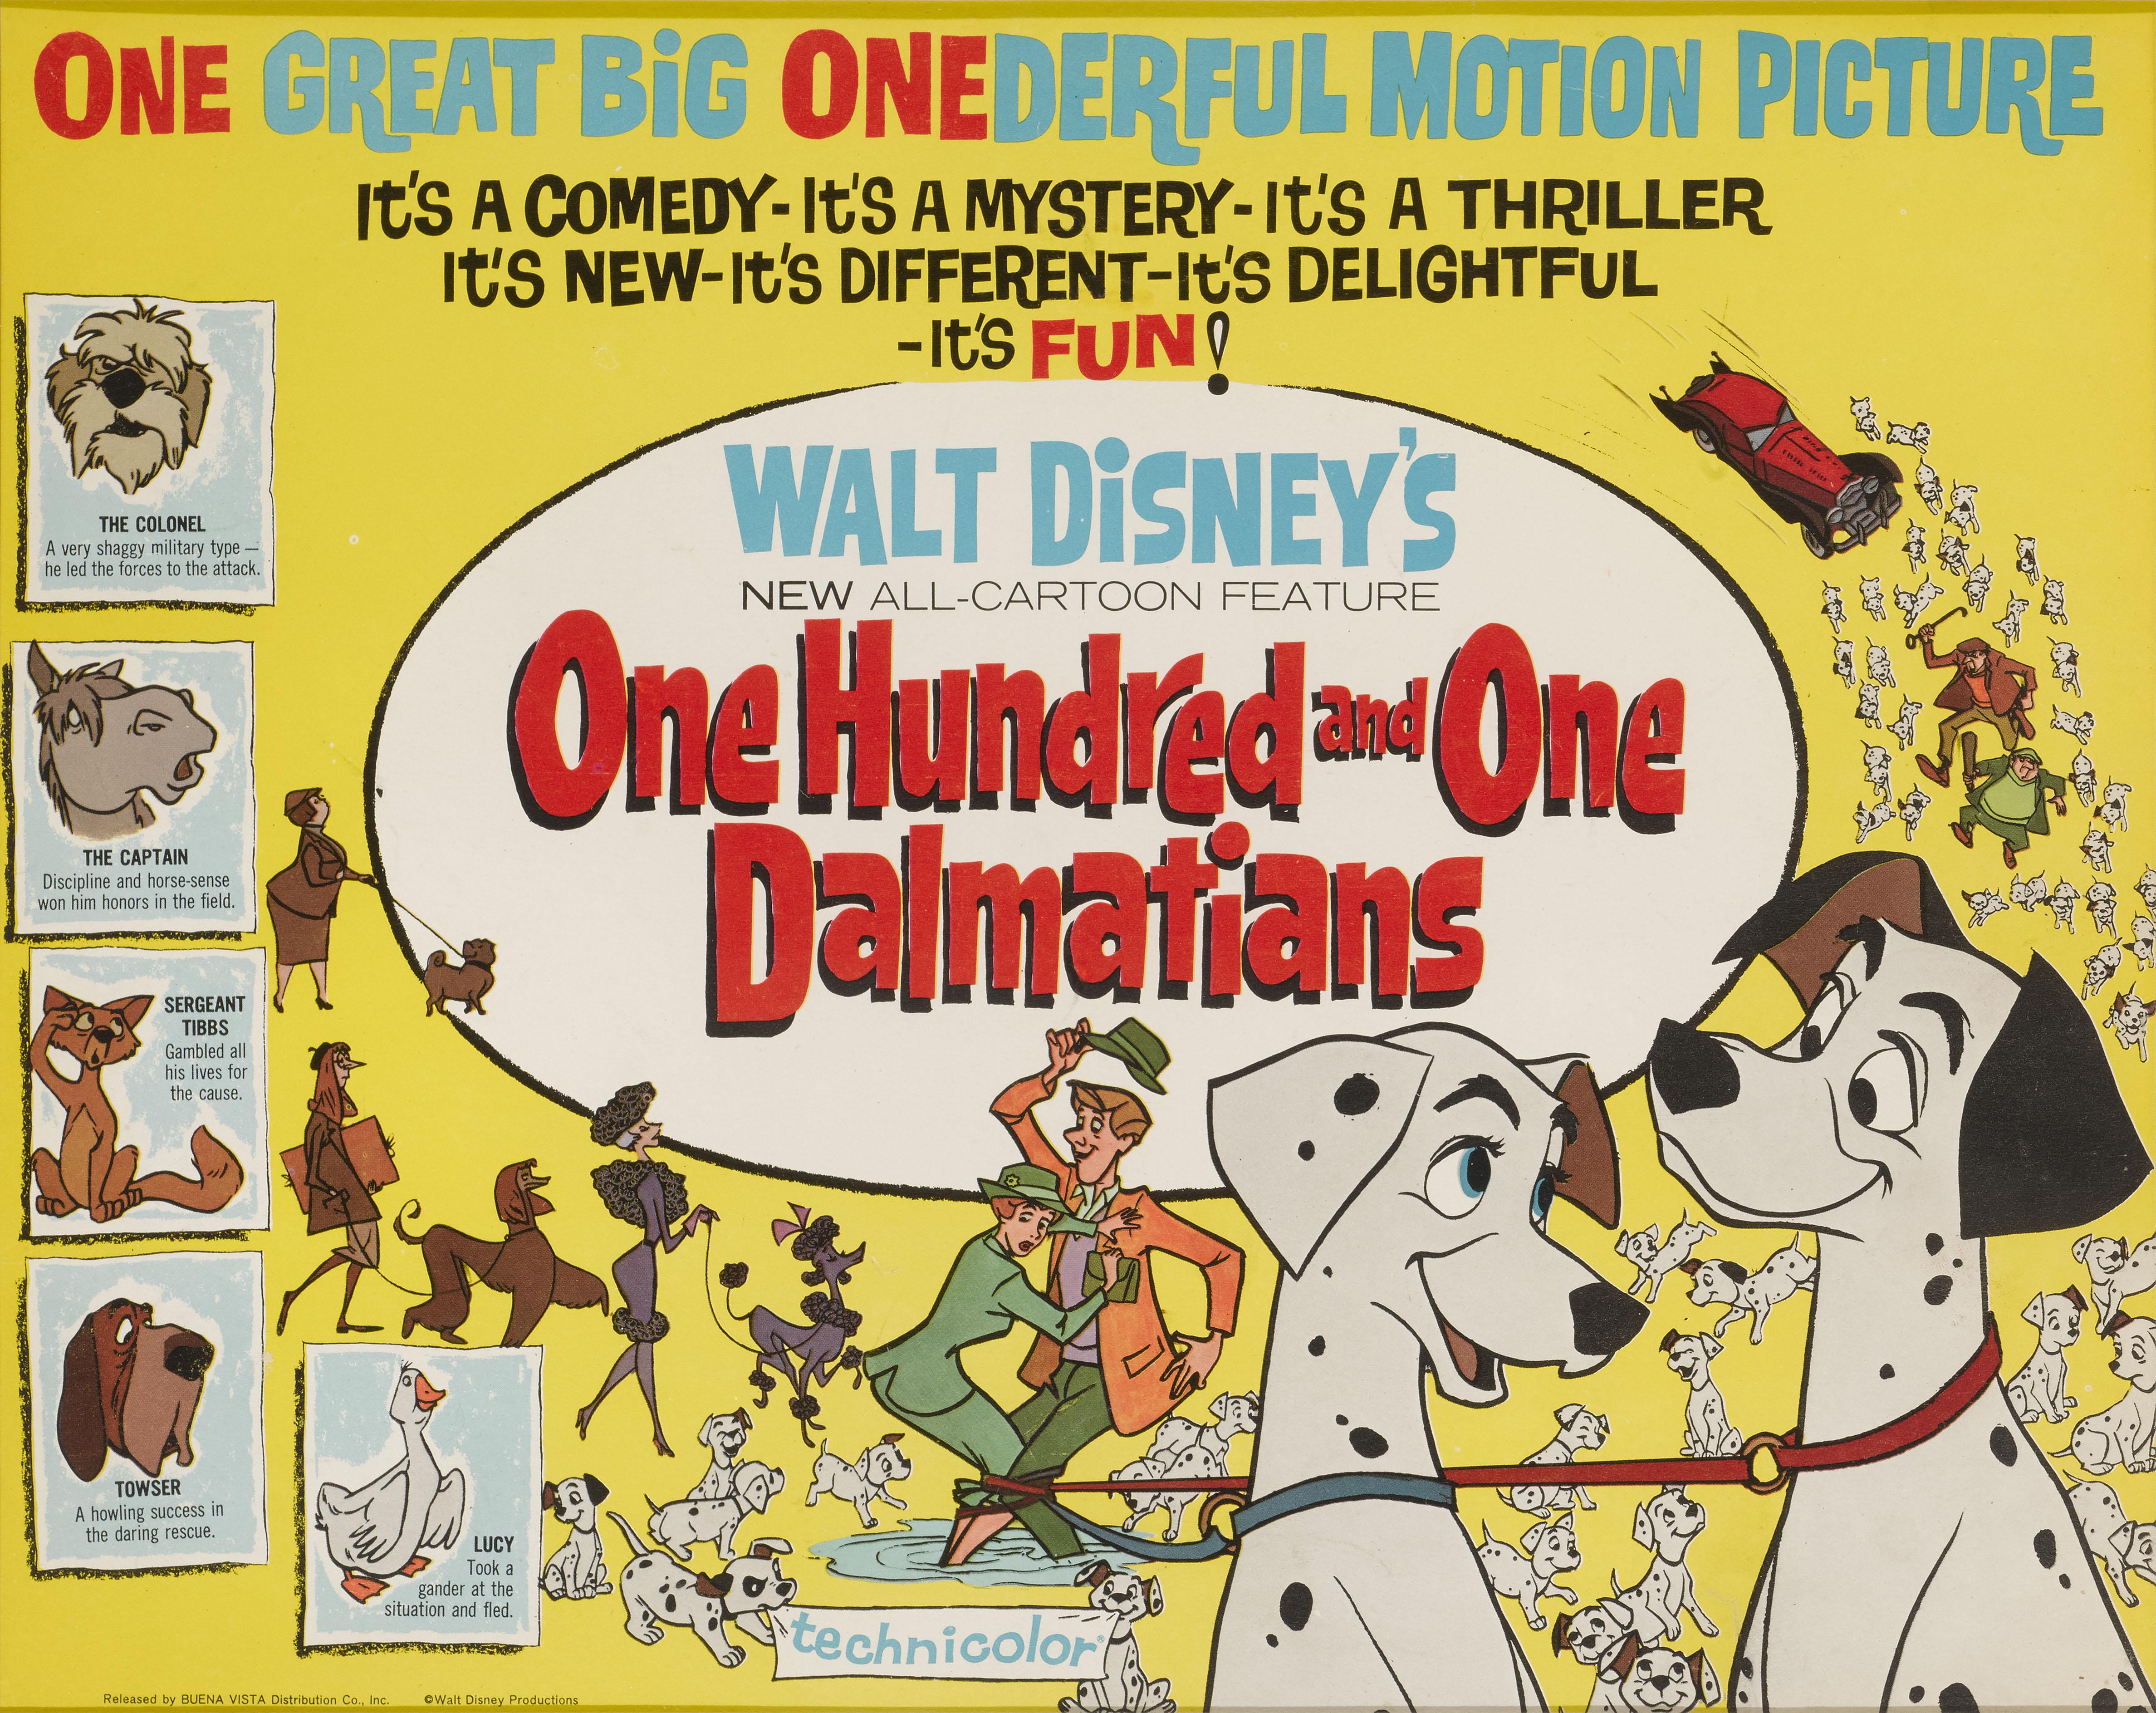 Original US-Titel-Lobbykarte für den Disney-Zeichentrickfilm One Hundred and One Dalmatians von 1961.
Die Regie bei diesem Film führten Clyde Geronimi und Hamilton Luske.
Das Werk ist mit UV-Plexiglas in einem Tulpenholzrahmen mit säurefreien